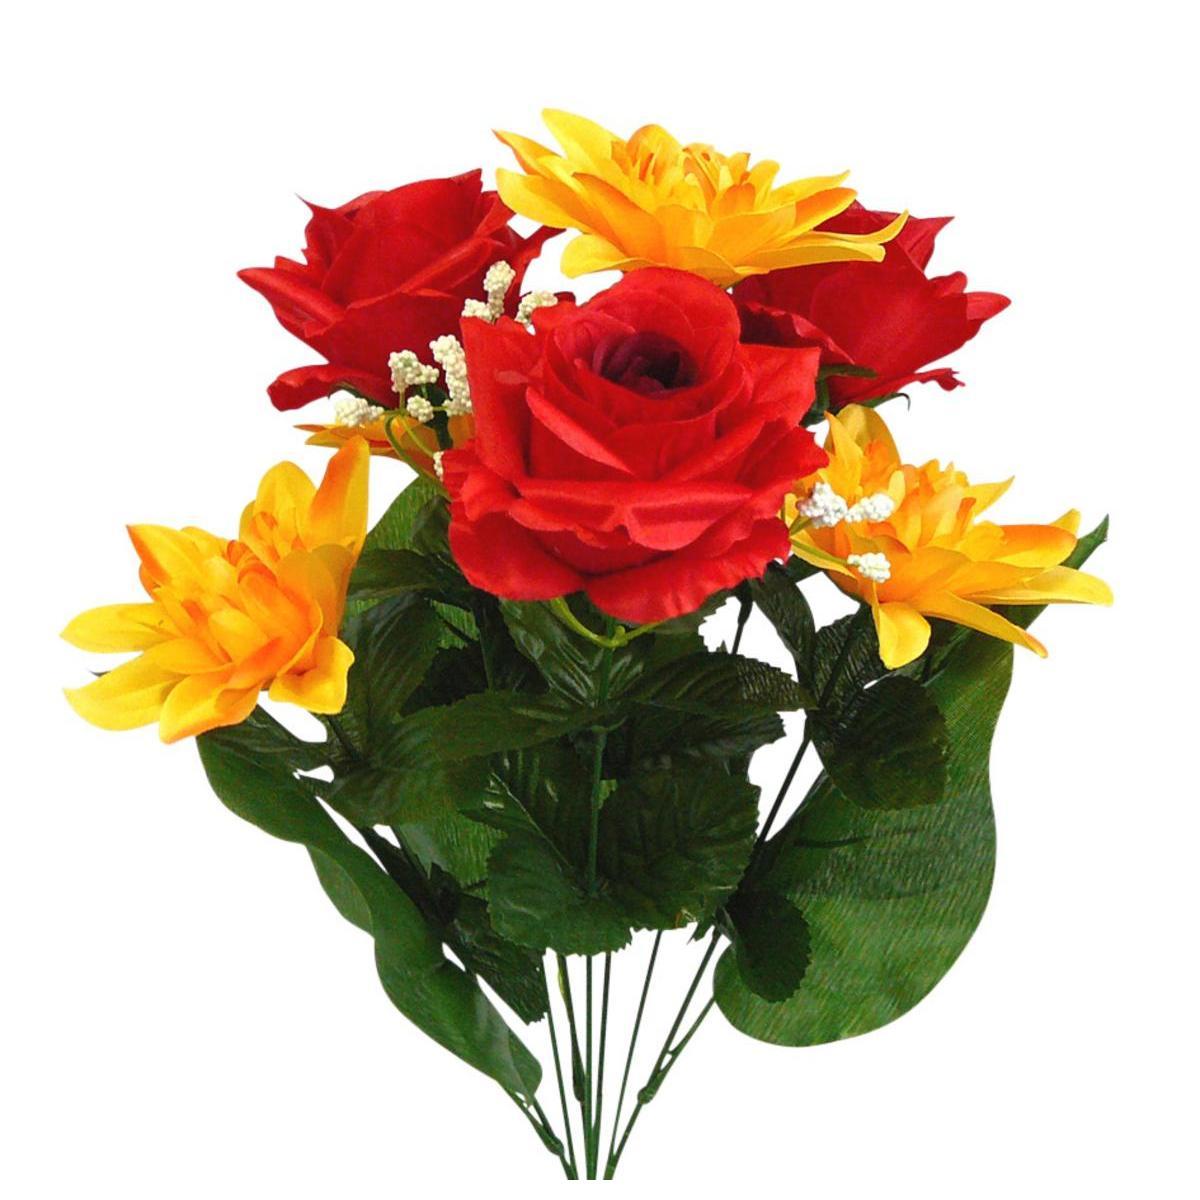 Bouquet de dahlias et de roses - 3 assortiments